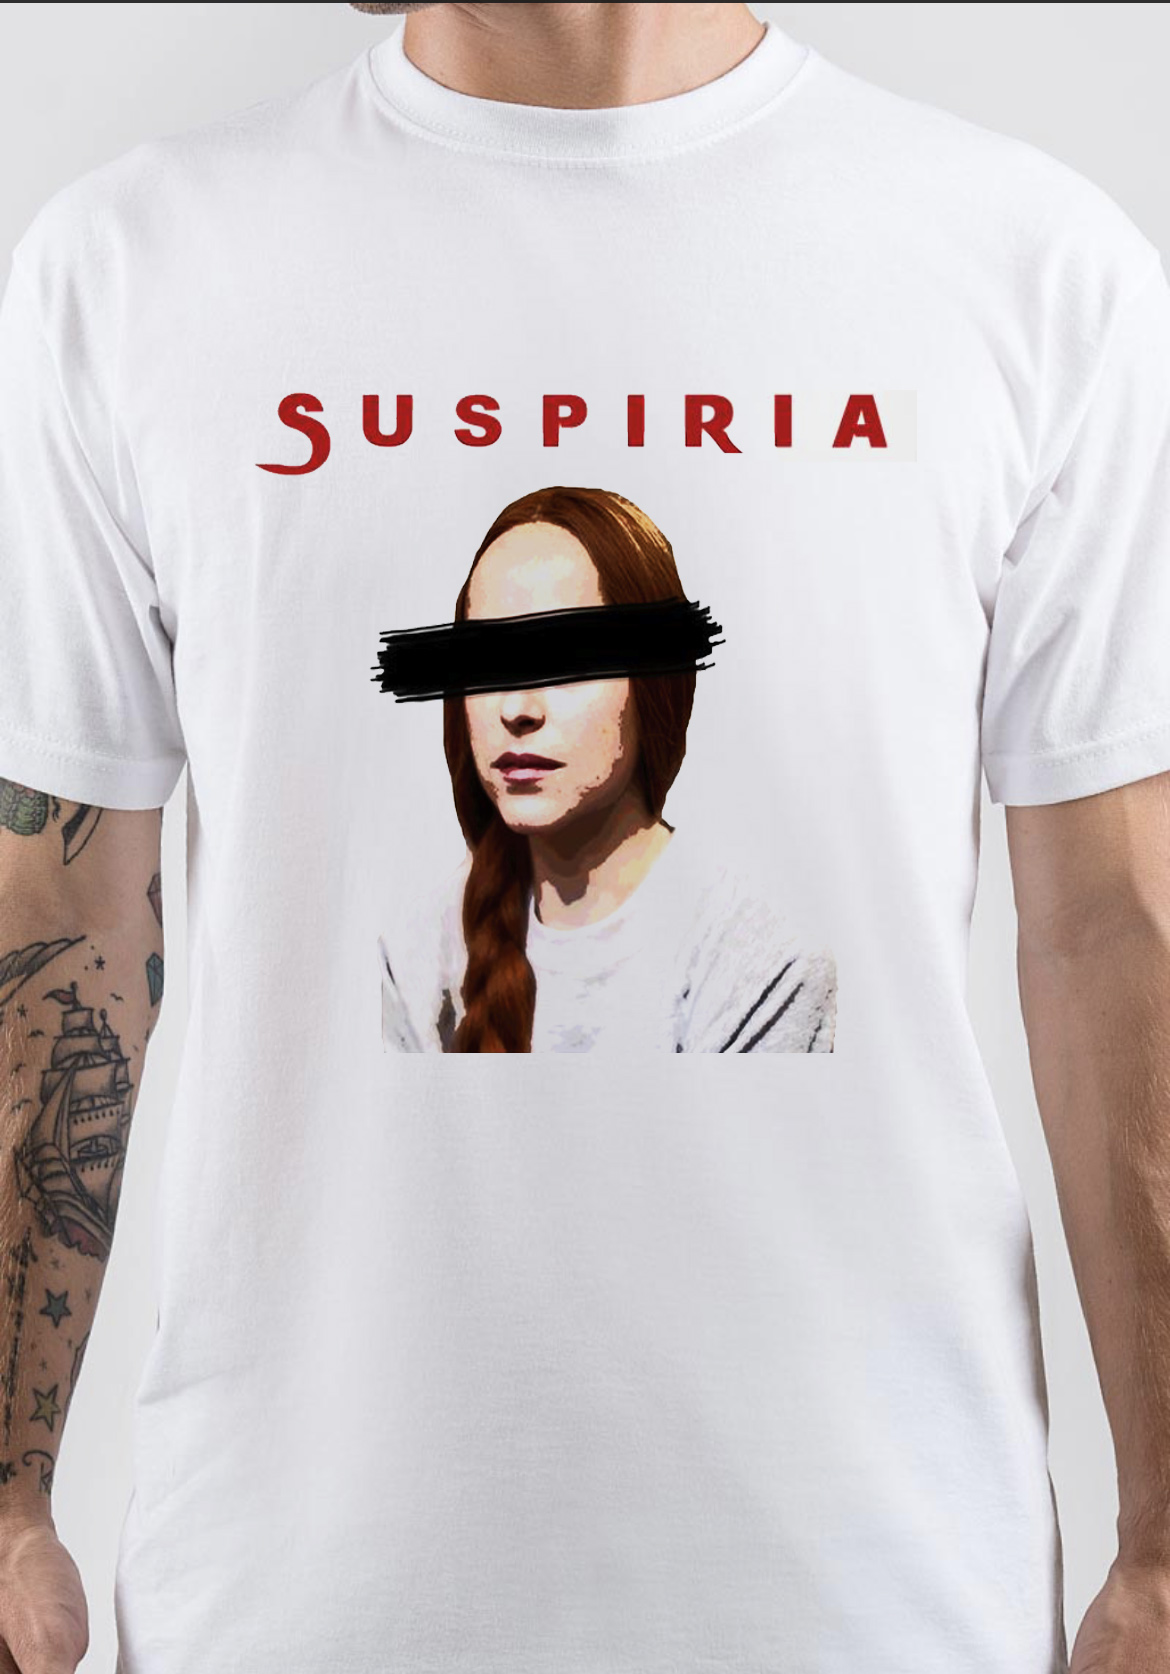 Suspiria T-Shirt And Merchandise